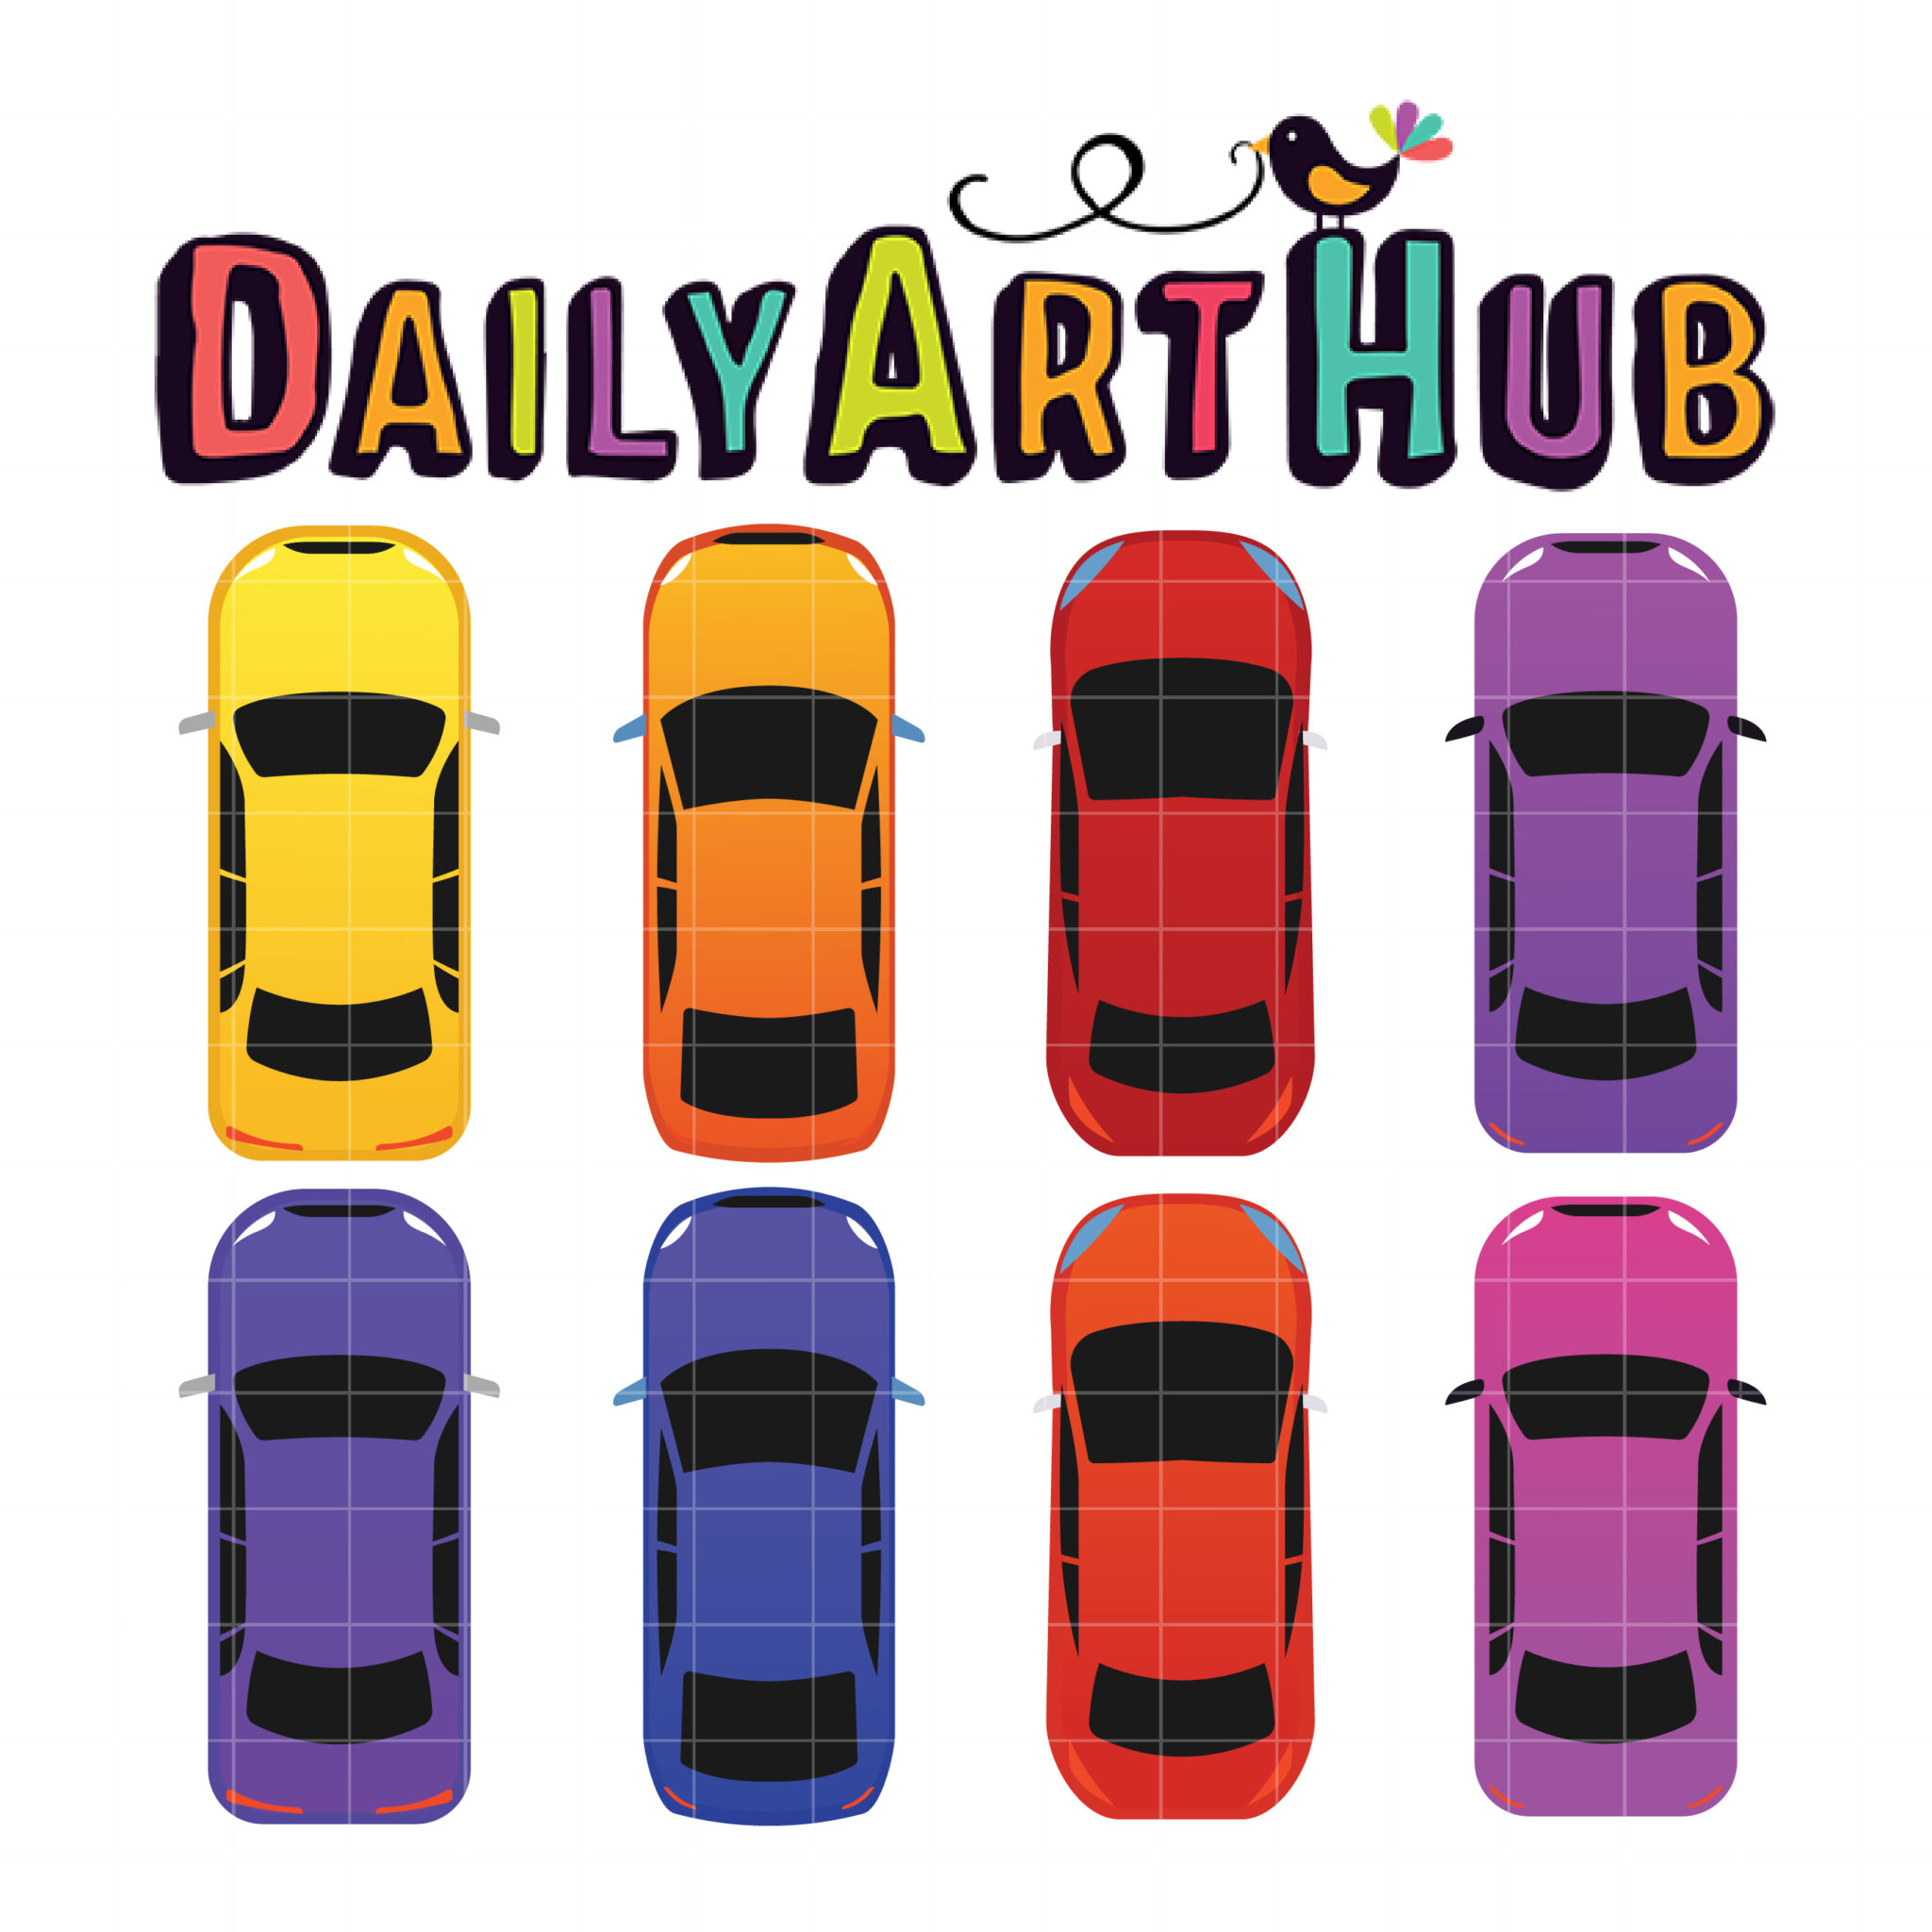 Med det samme råd Konkurrencedygtige Cool Cars Top View Clip Art Set – Daily Art Hub // Graphics, Alphabets & SVG